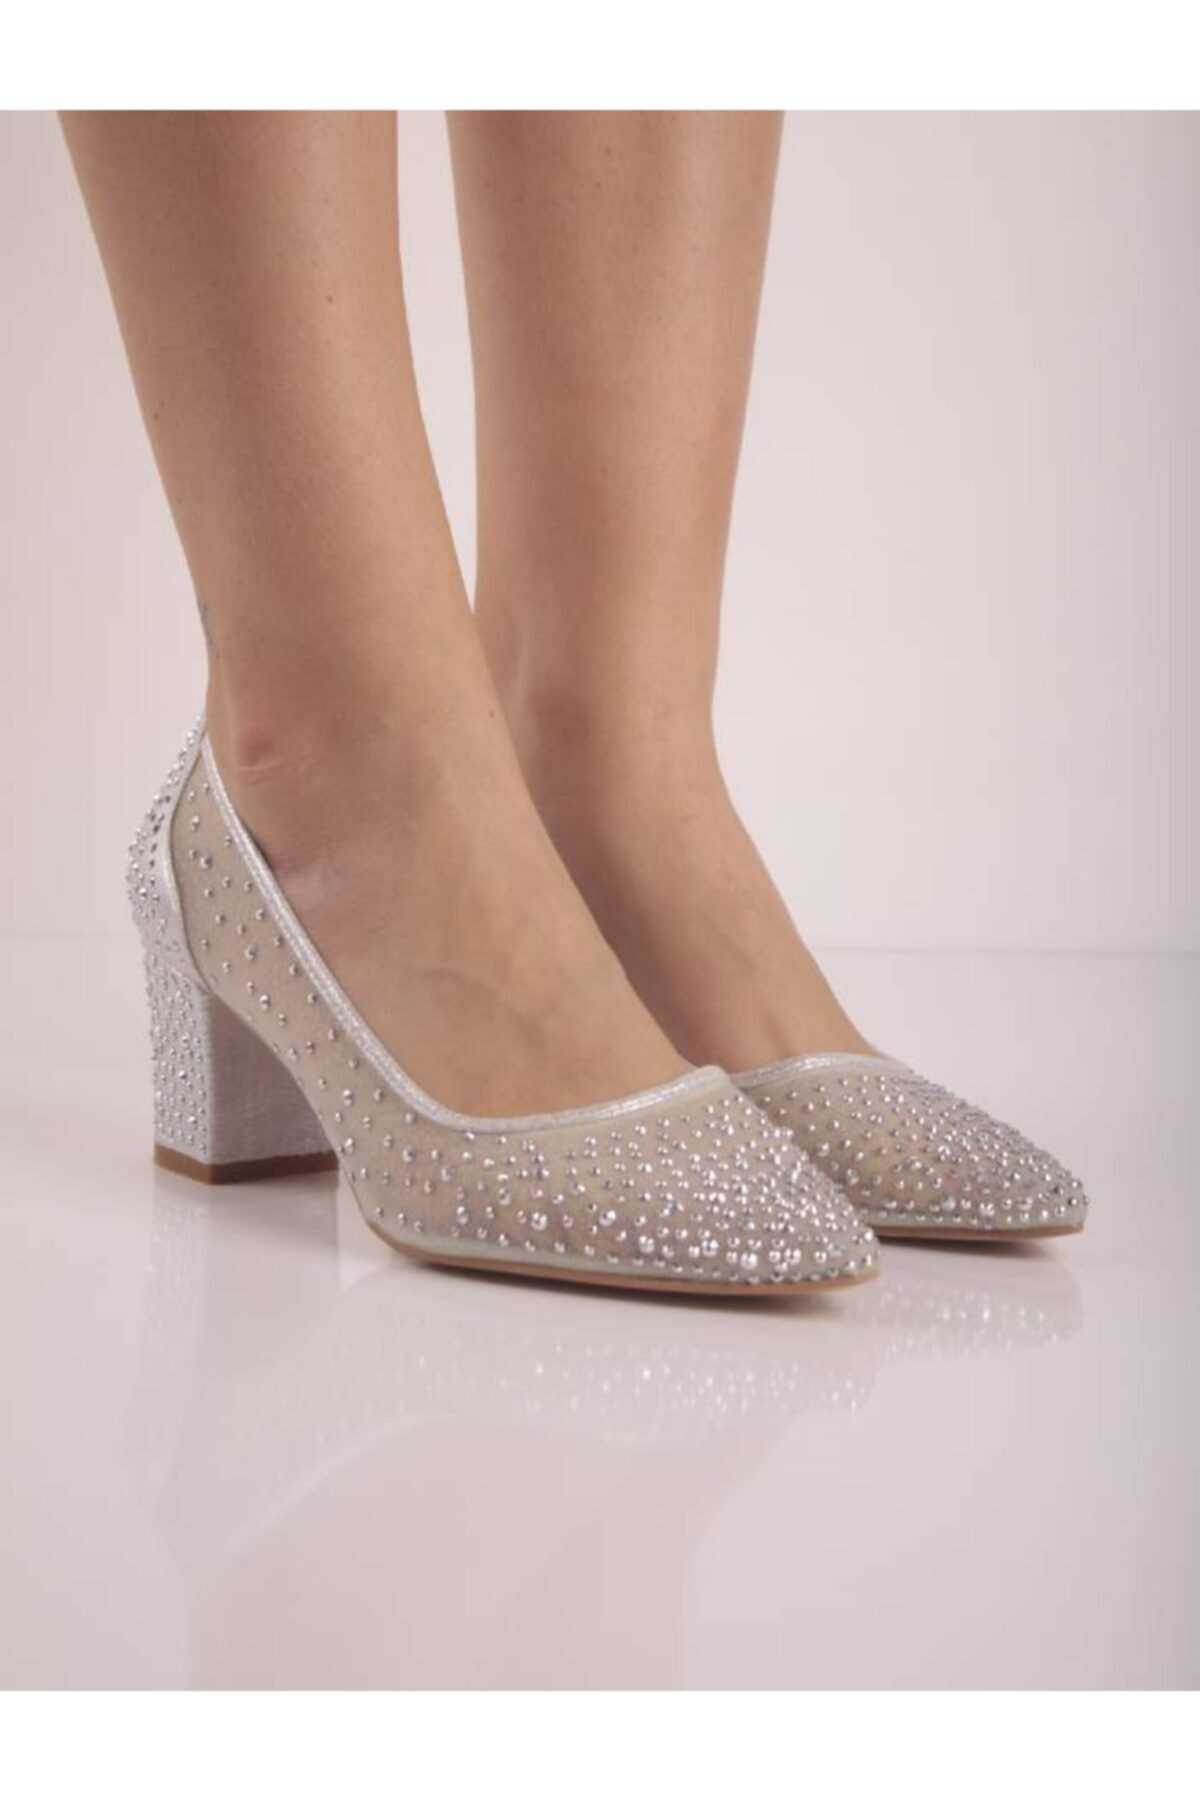 خرید کفش پاشنه بلند زنانه از ترکیه شیک Şanslı Ayakkabıcılık رنگ نقره ای کد ty174793049